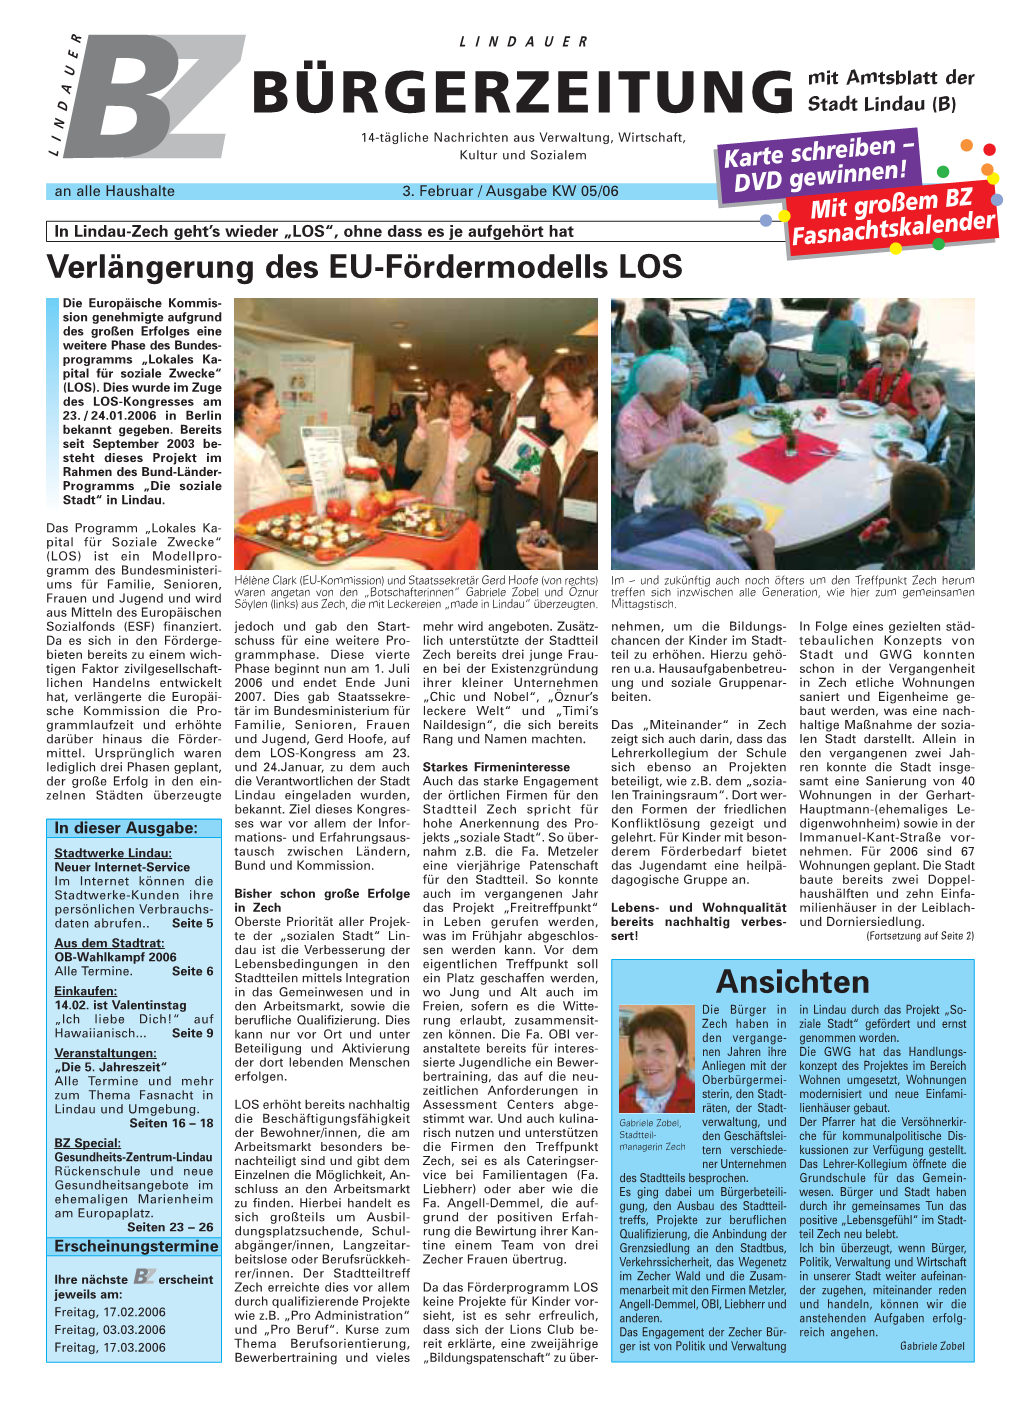 Zbdie Lindauer Bürgerzeitung